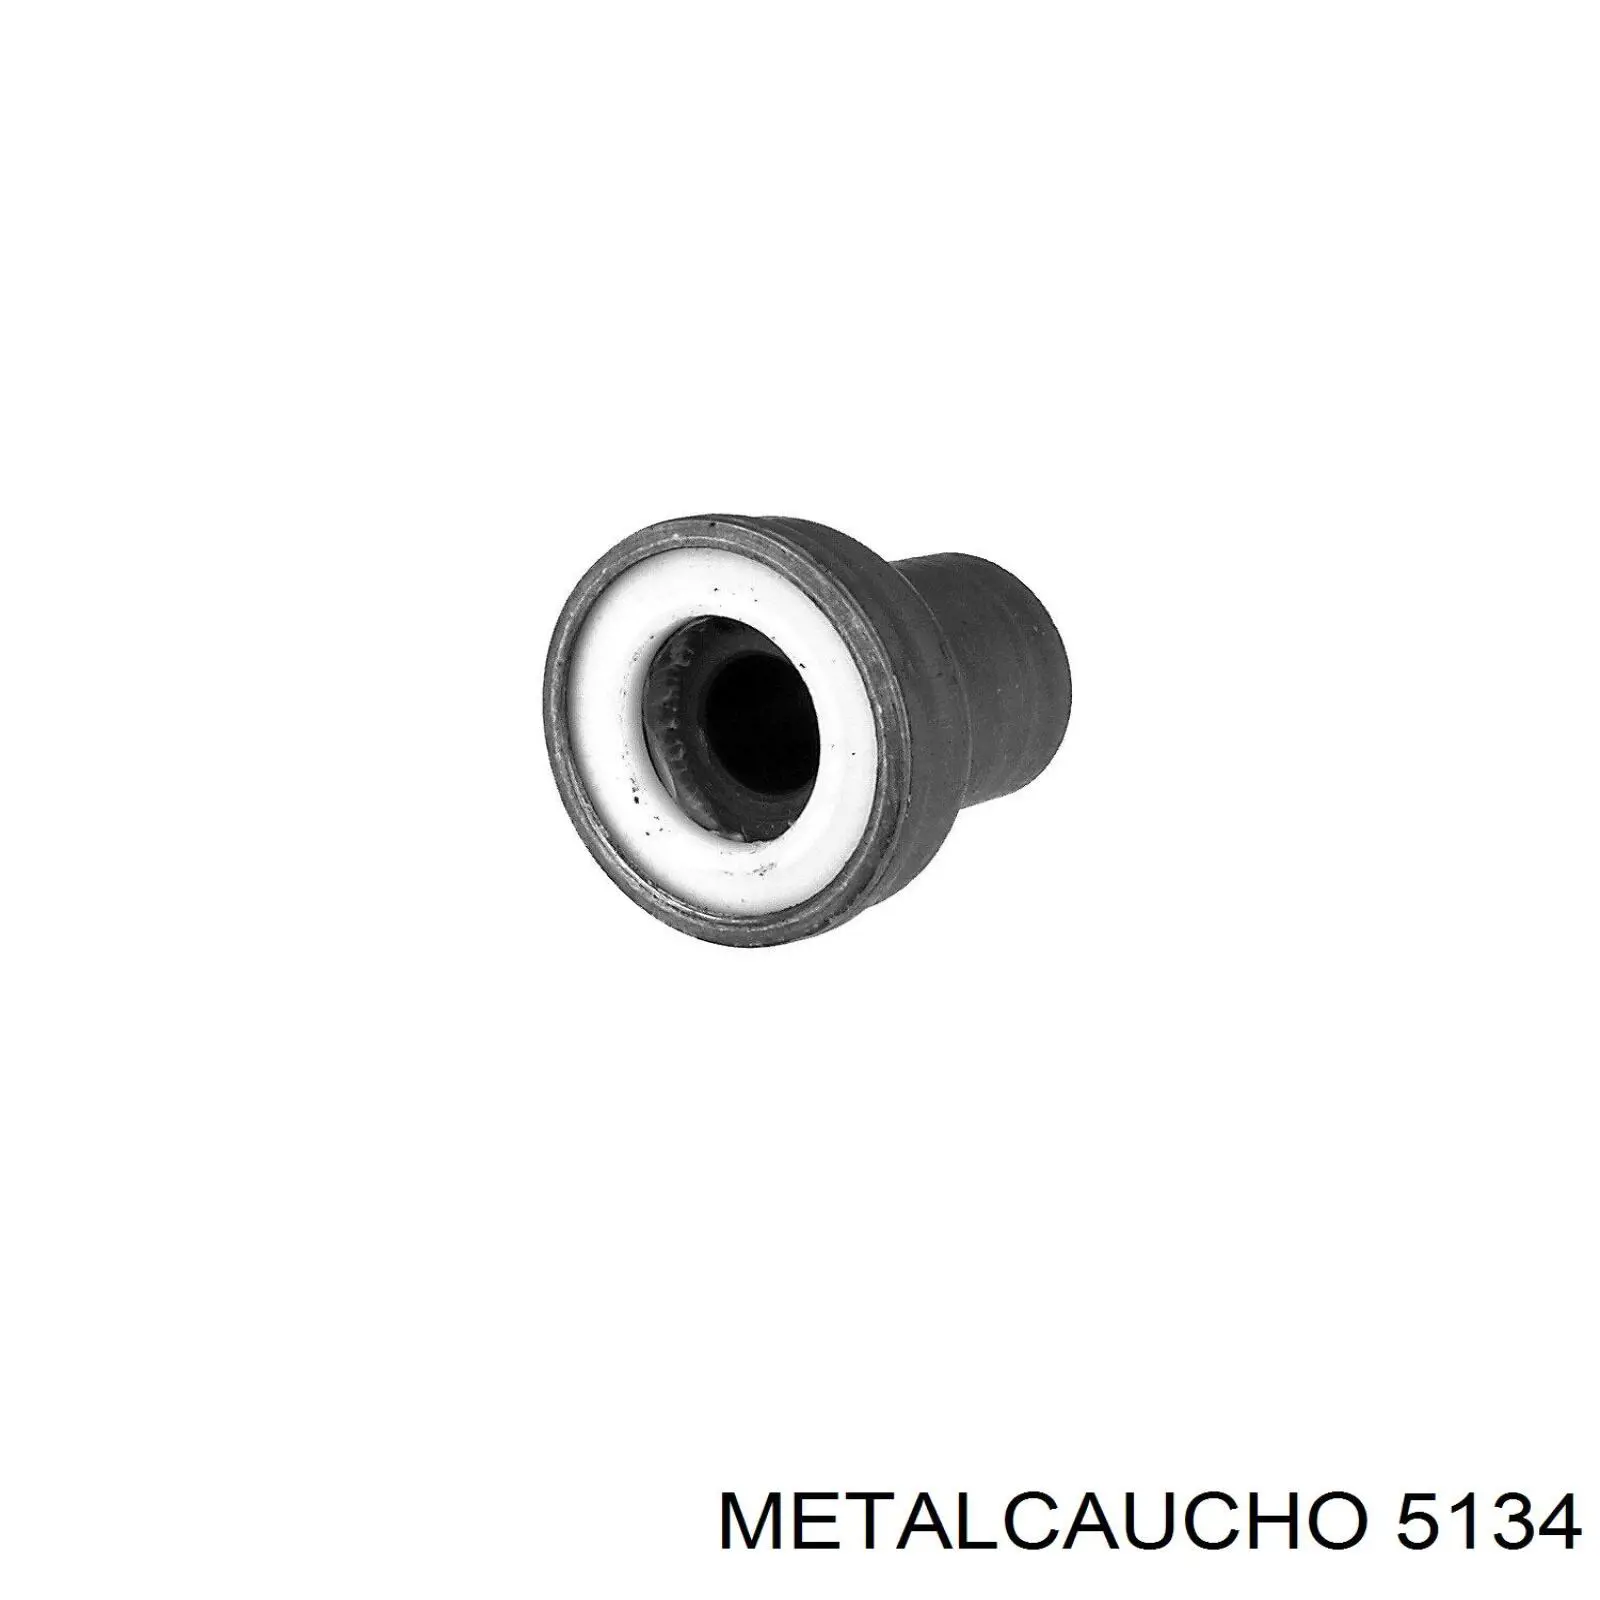 5134 Metalcaucho прокладка турбины, гибкая вставка